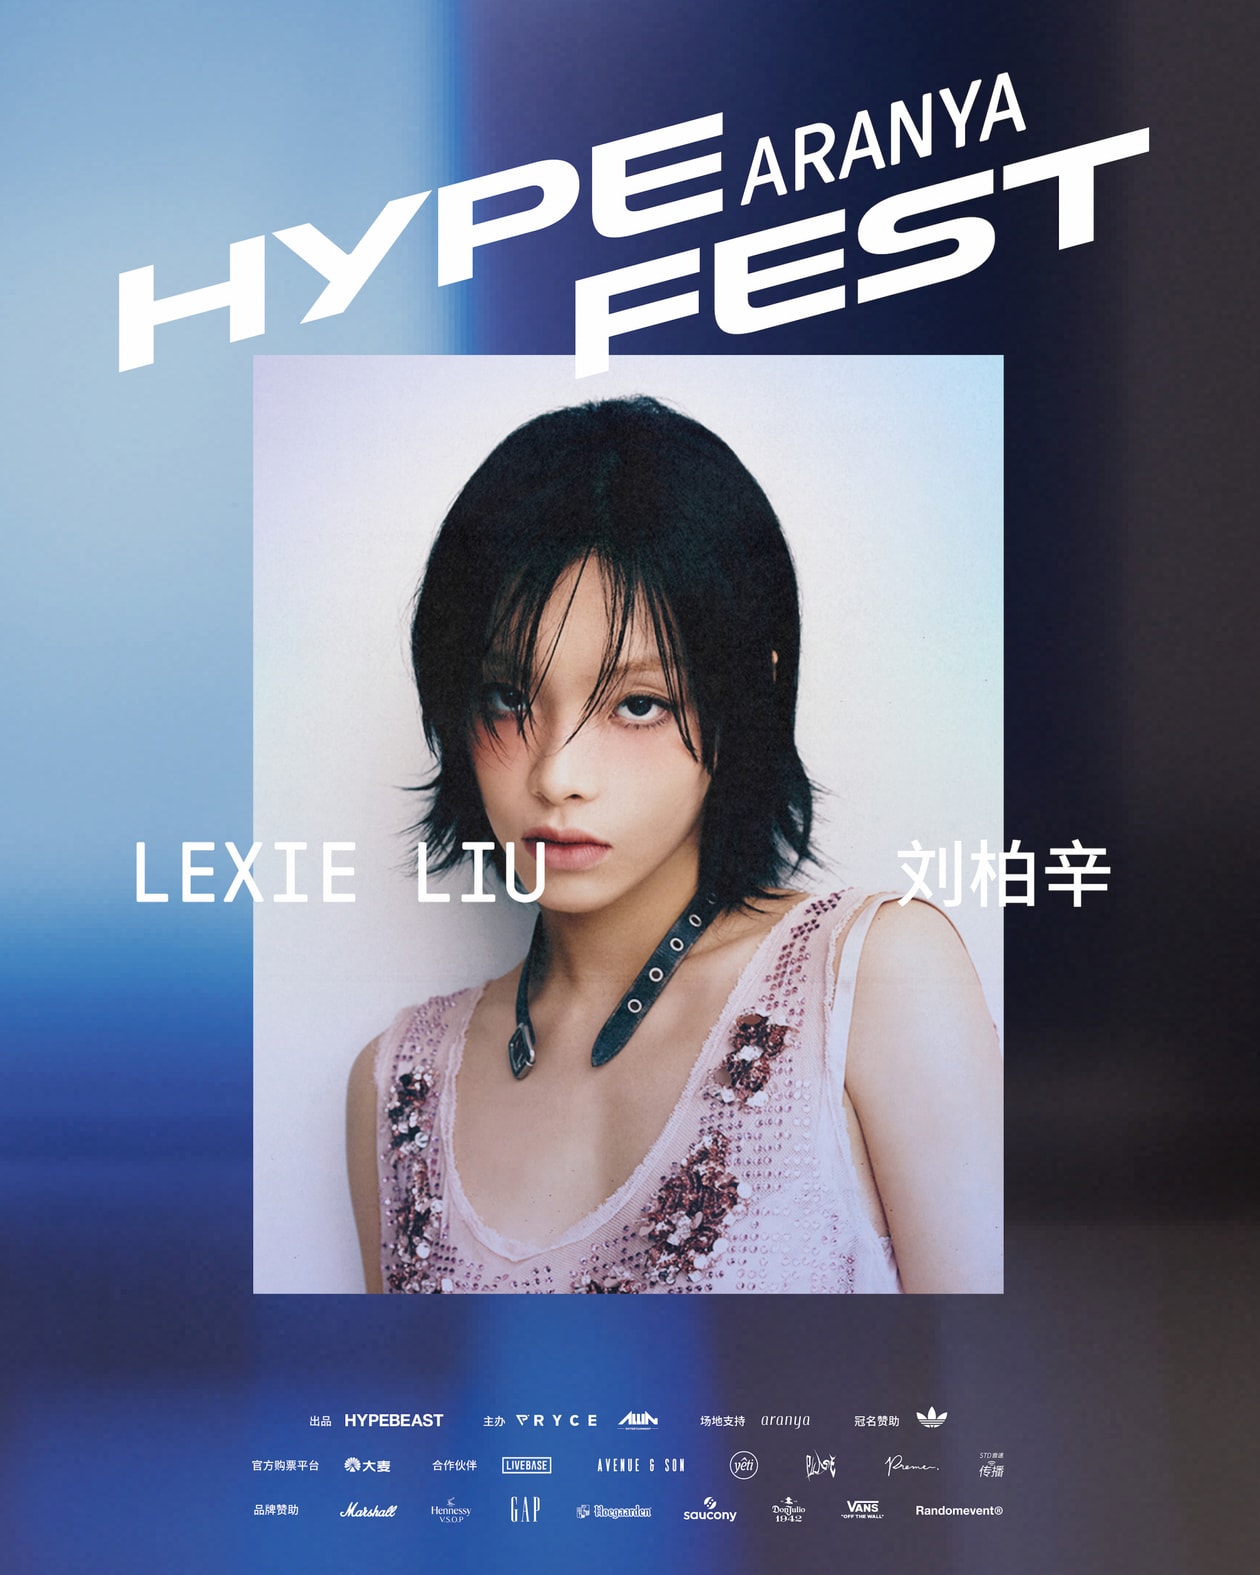  首次进入中国！Hypefest 文化盛会将于 9 月 23、24 日登陆阿那亚 